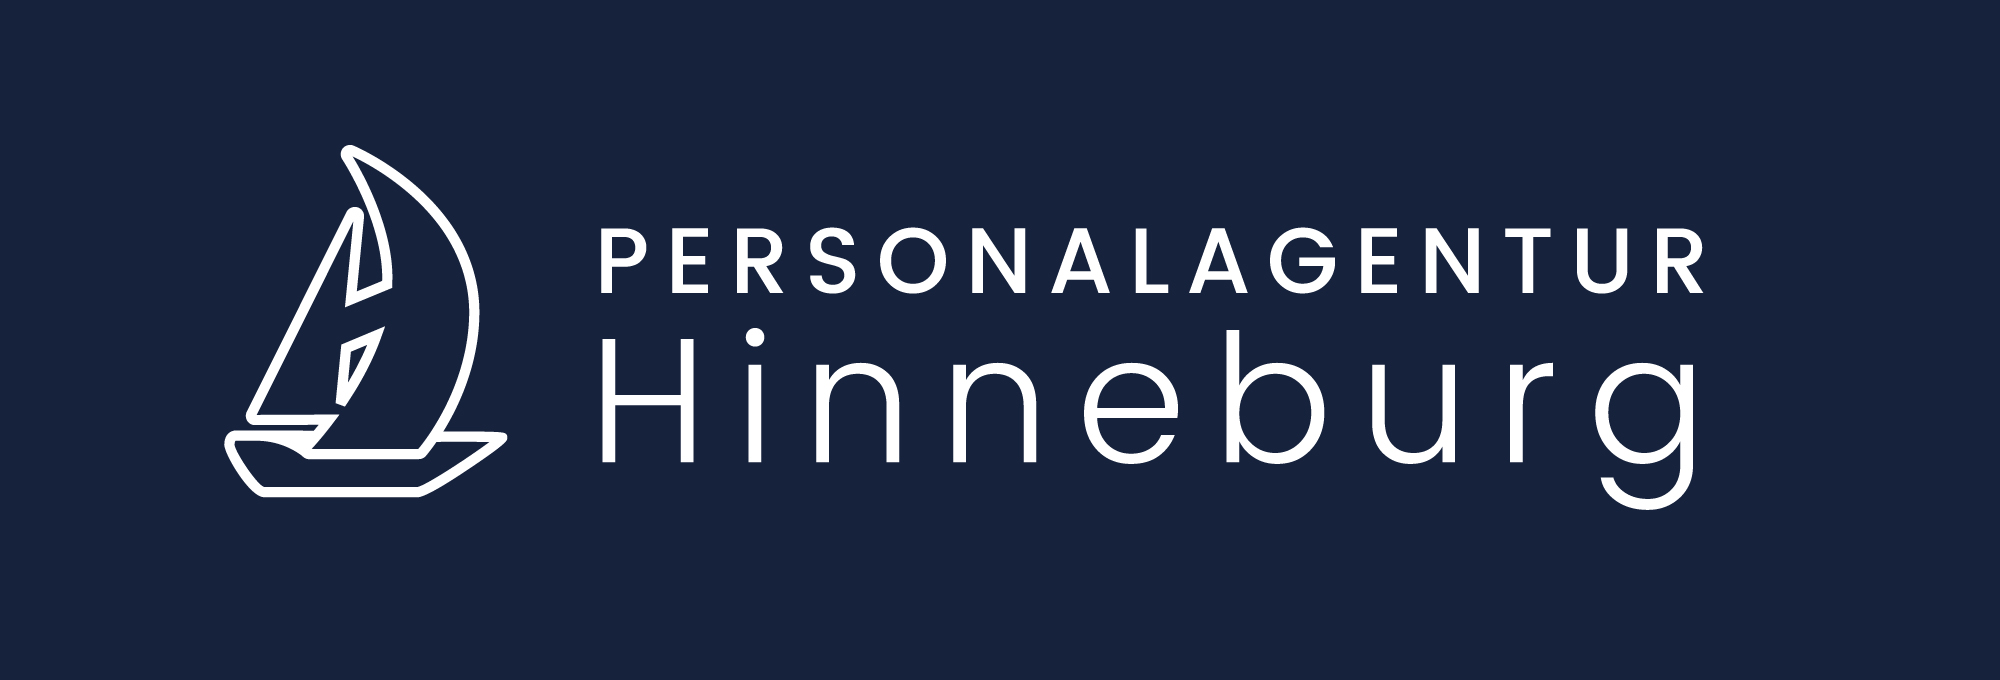 Personalagentur Hinneburg GmbH